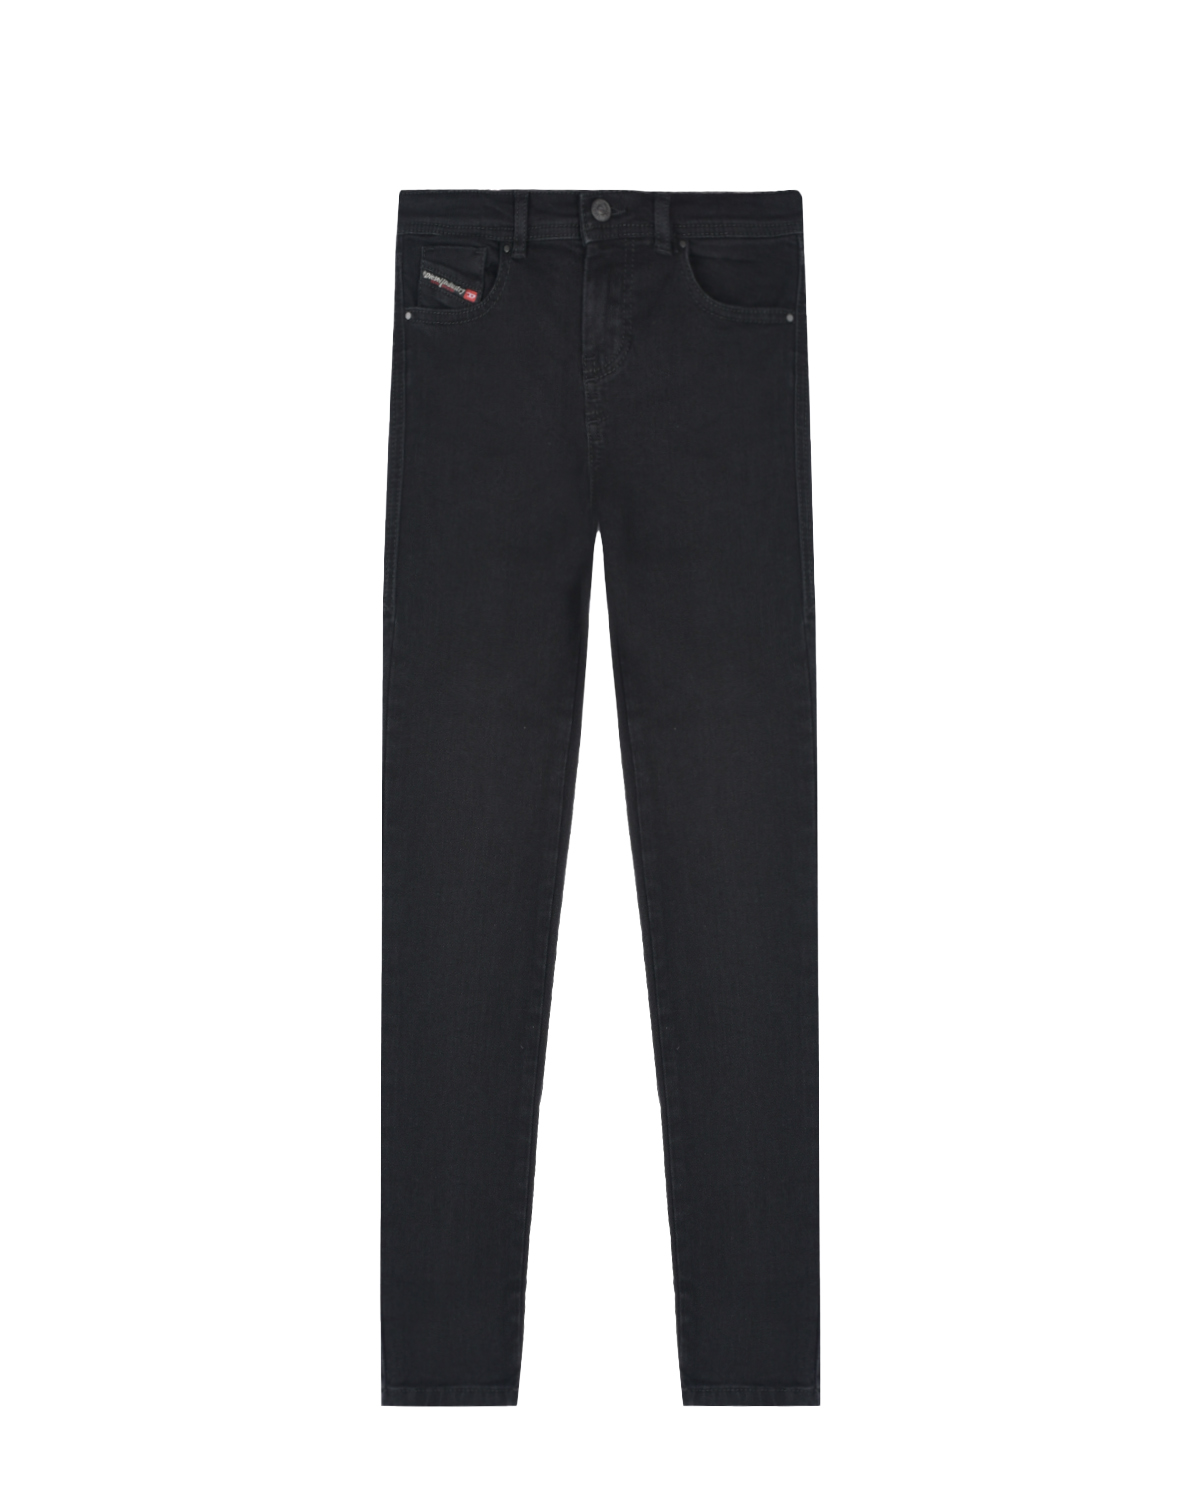 Зауженные черные джинсы Diesel детские, размер 104, цвет черный - фото 1